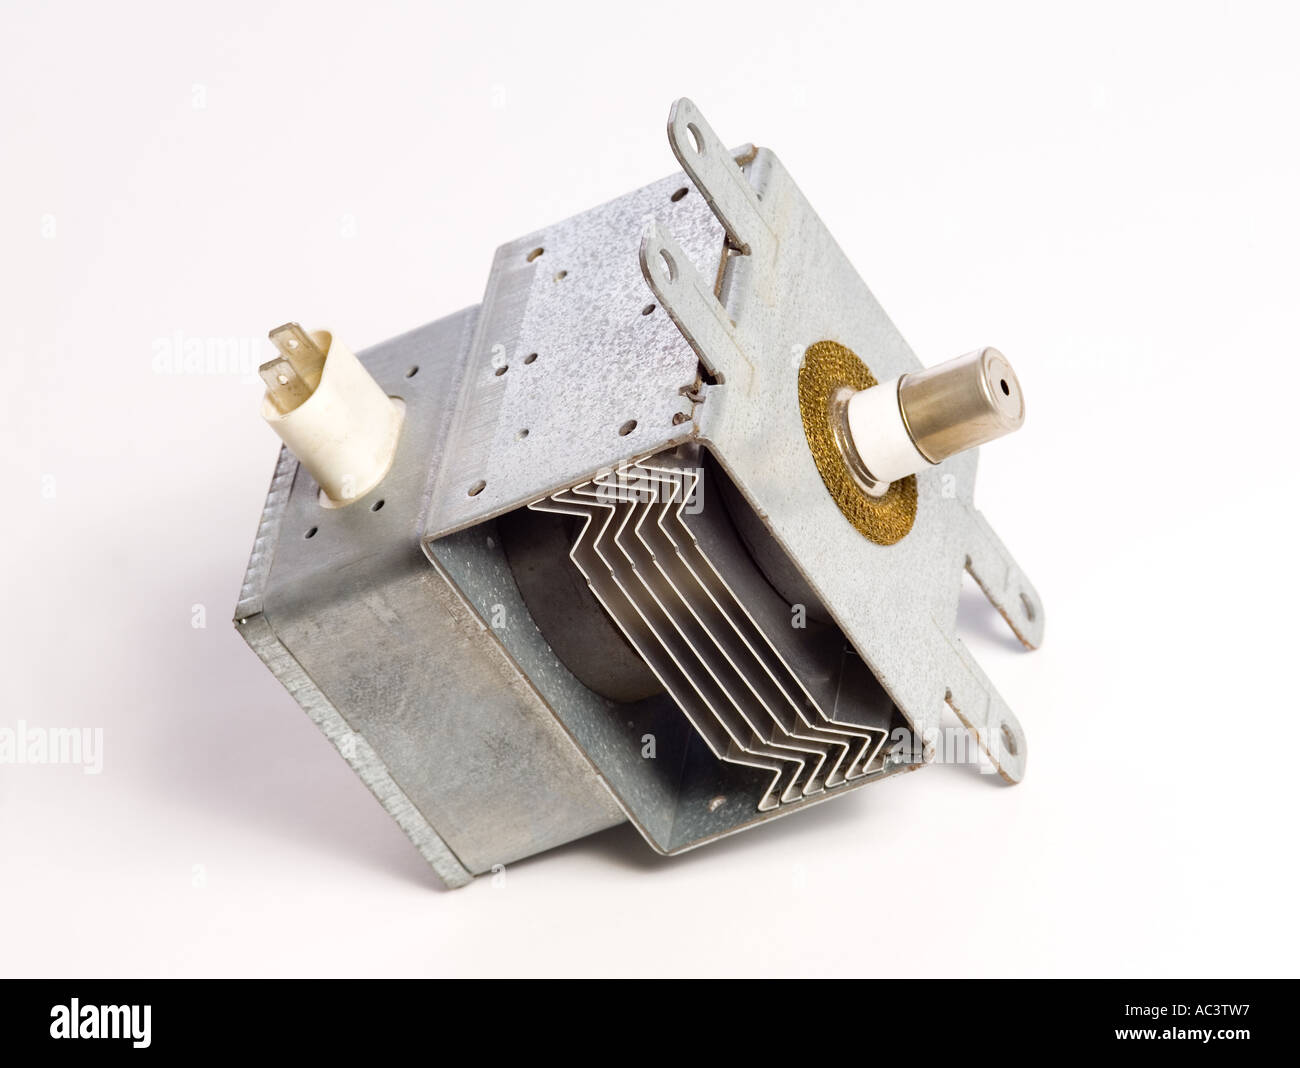 Le magnétron pour un four micro-ondes Photo Stock - Alamy